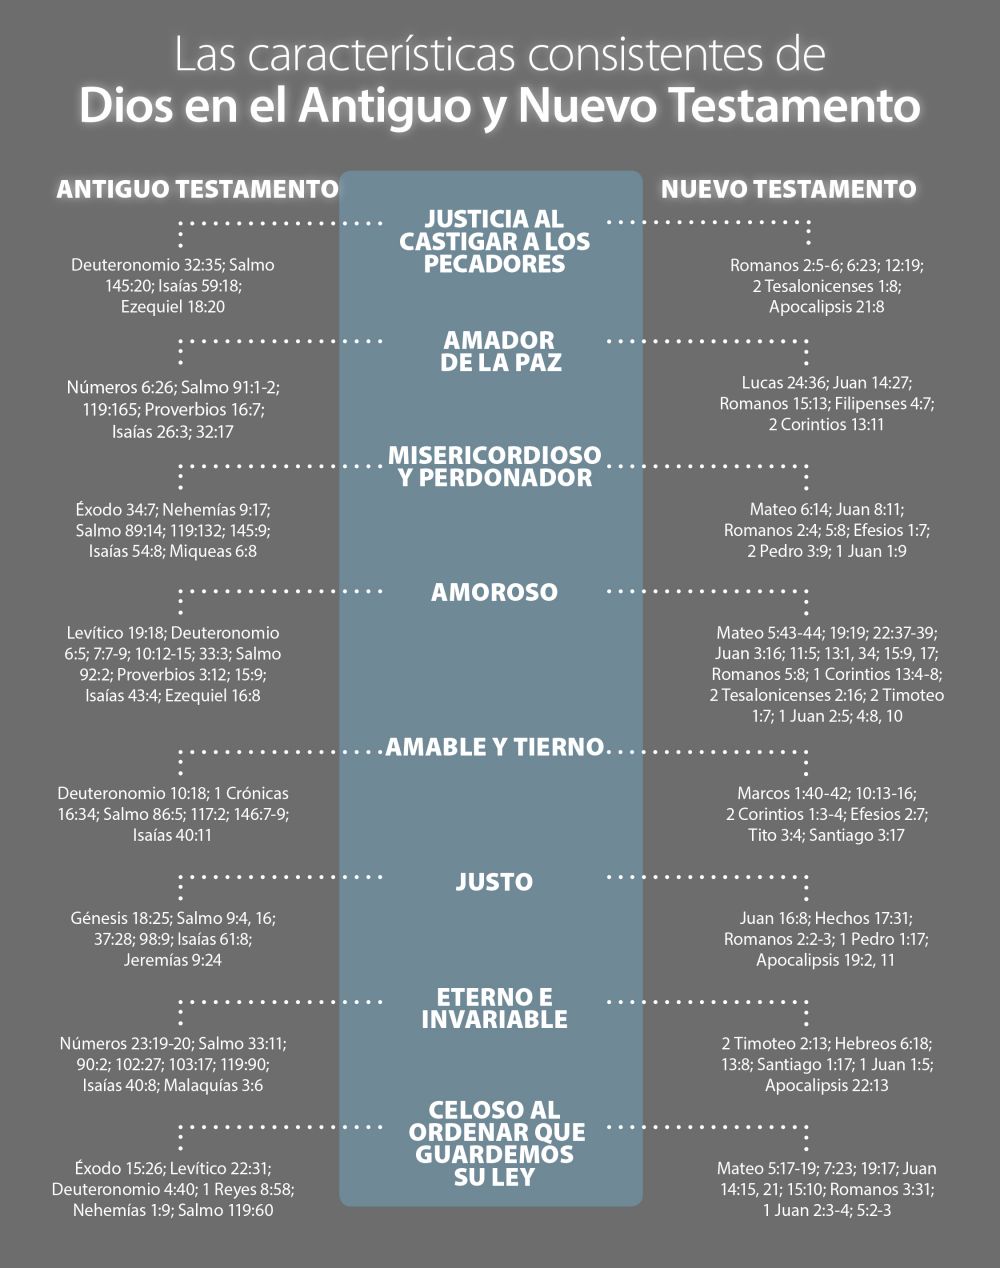 Características de Dios en el Antiguo y Nuevo Testamento